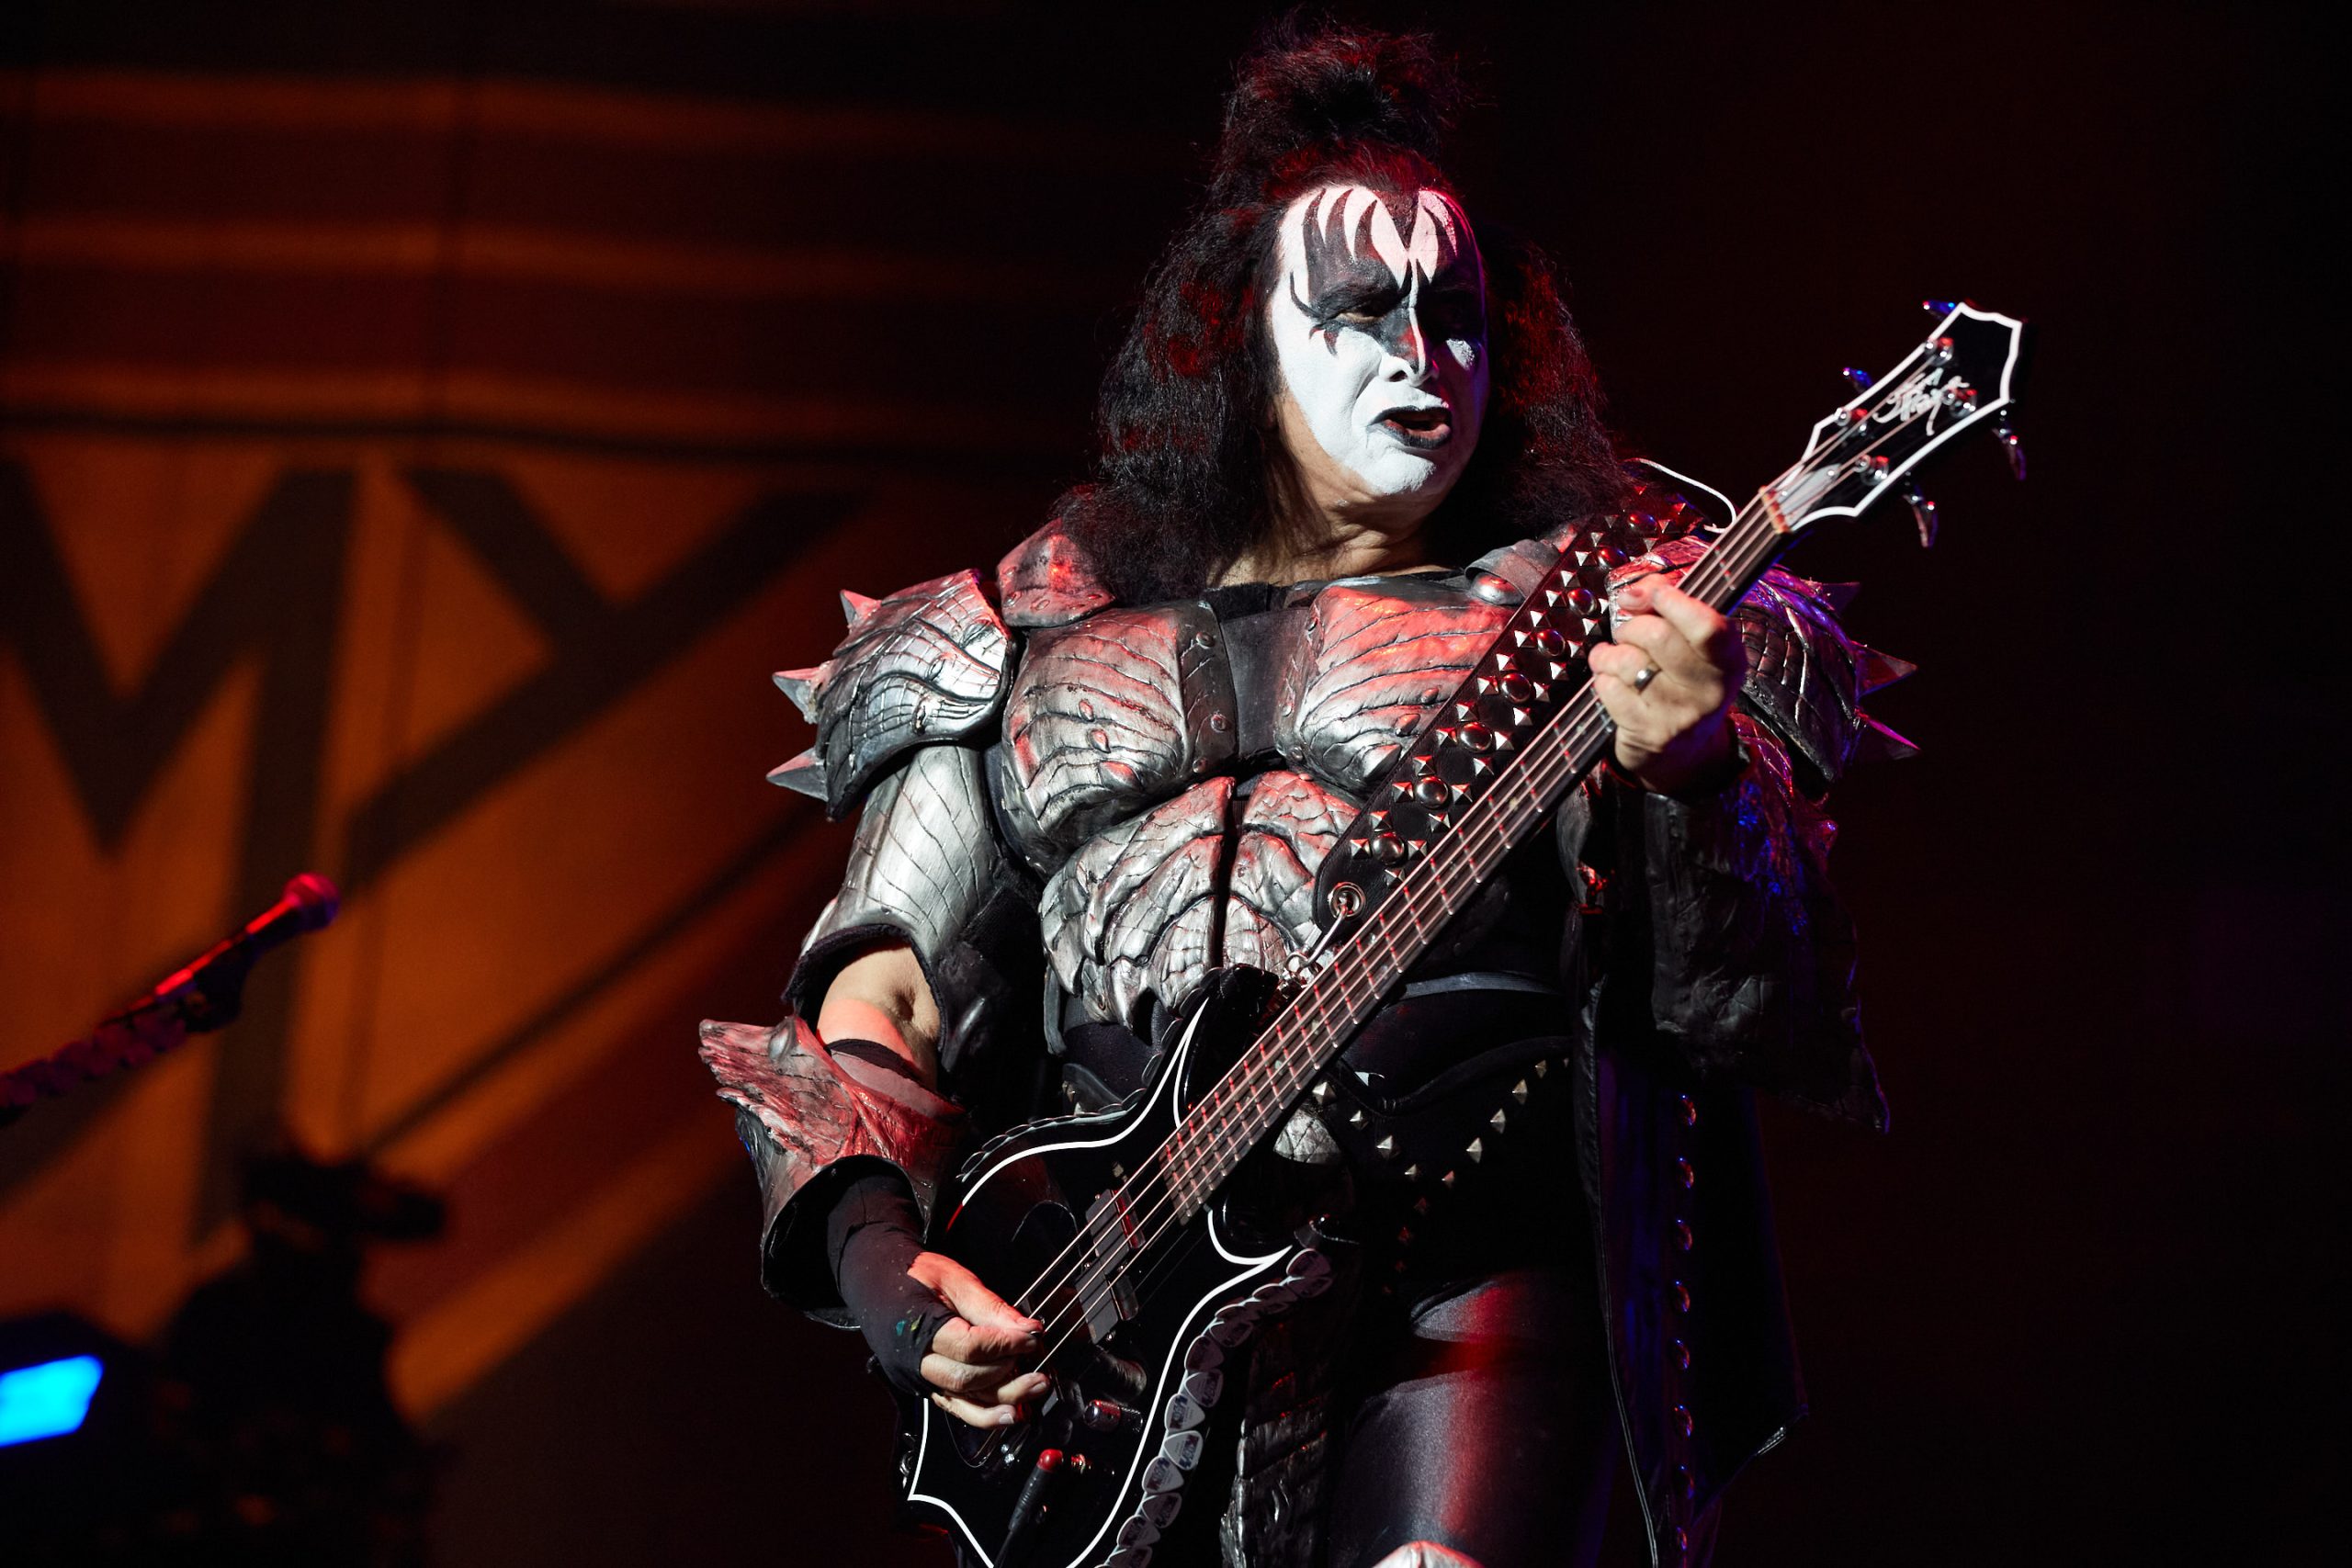 Gene Simmons de Kiss en el escenario con su icónica vestimenta y maquillaje.